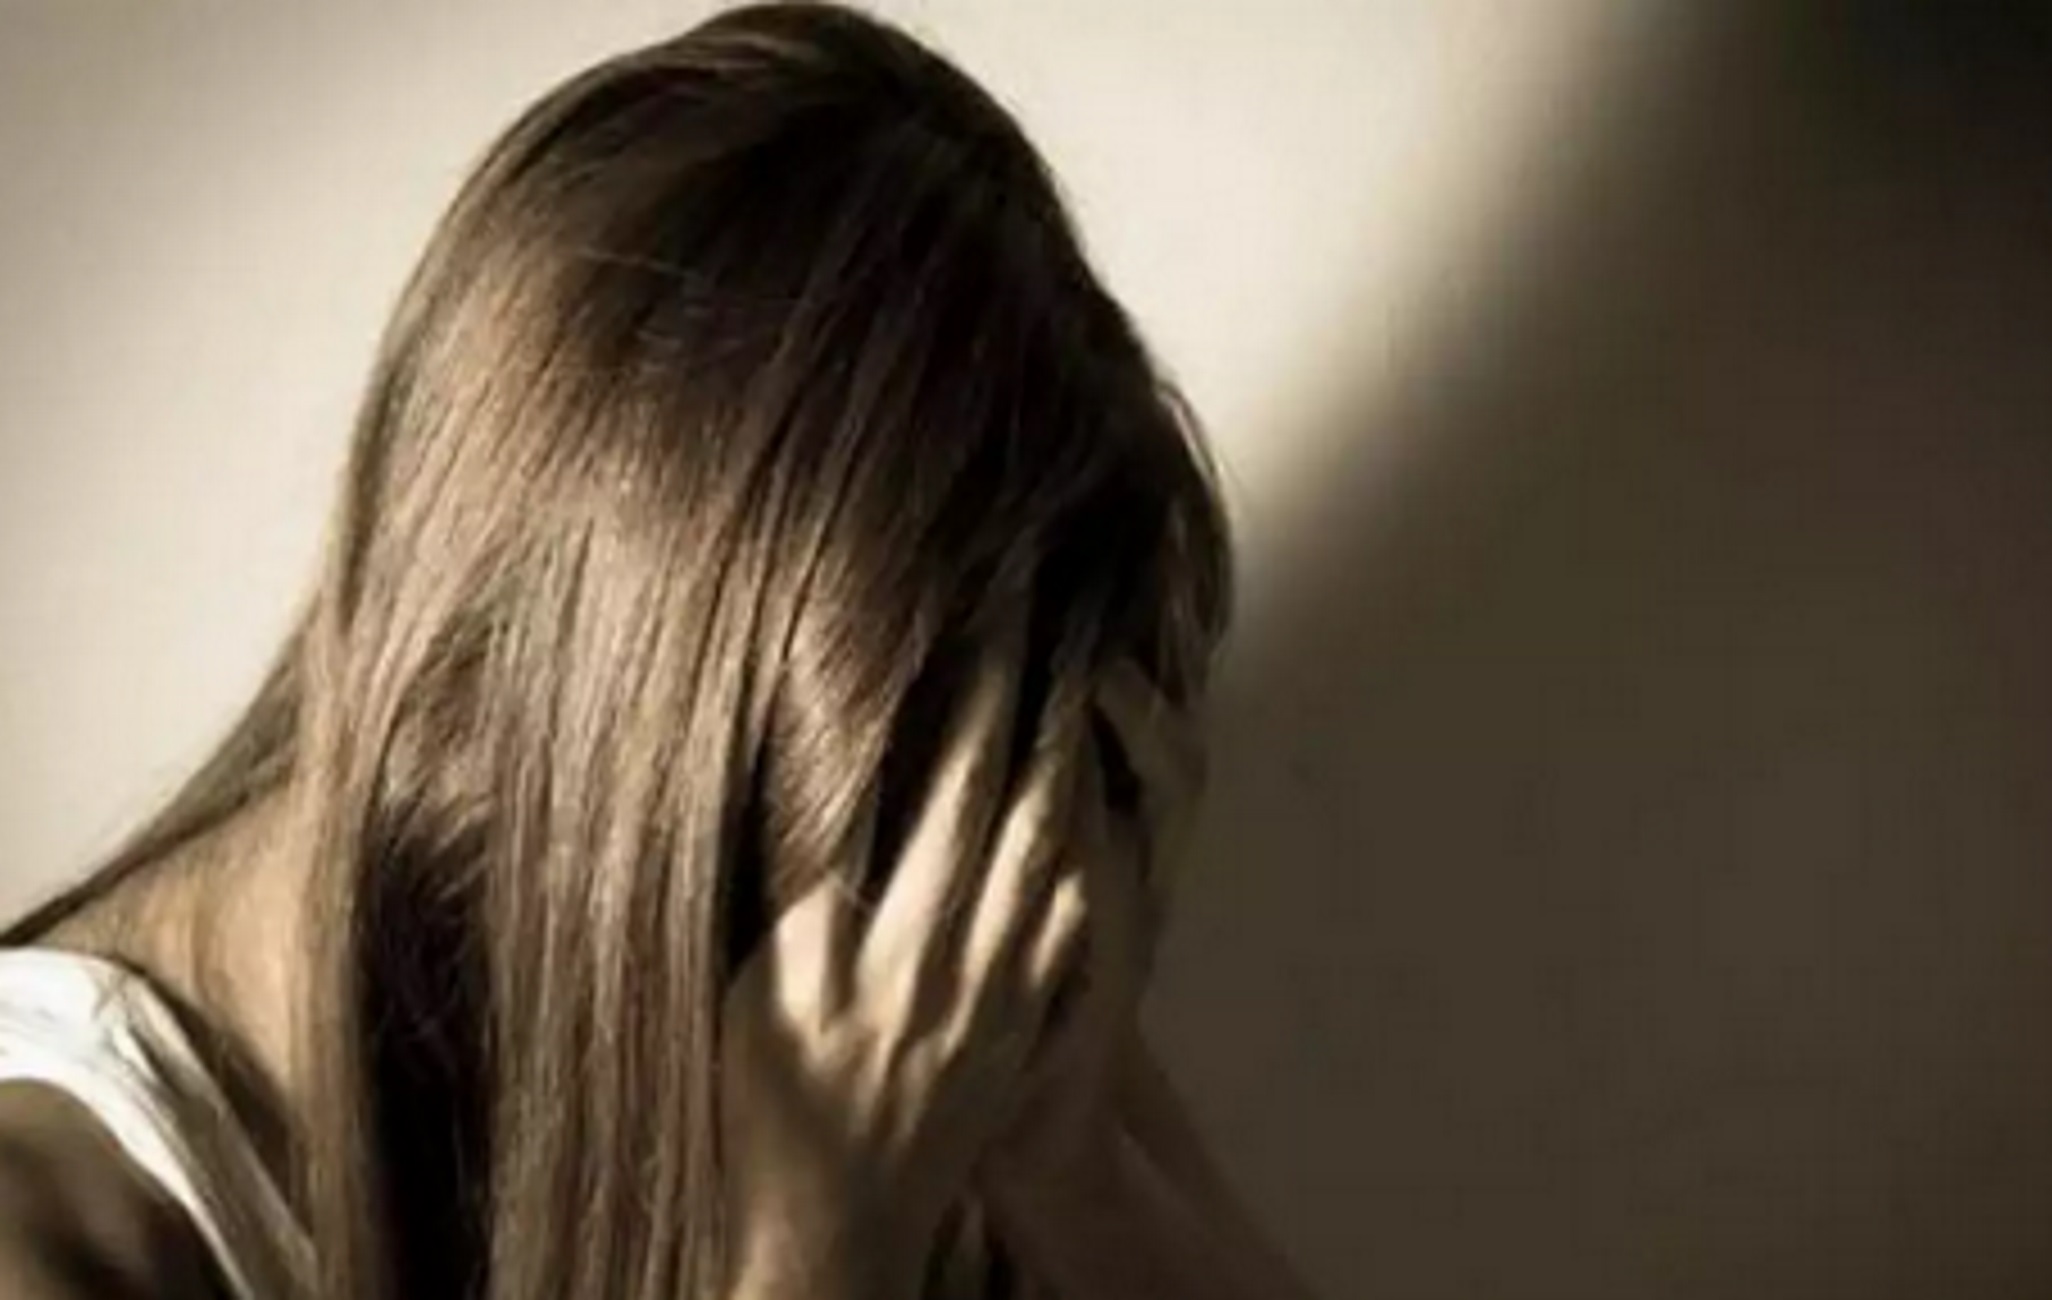 Λακωνία: 13χρονη καταγγέλλει ότι γέννησε το παιδί του βιαστή της, που είναι συγγενής της